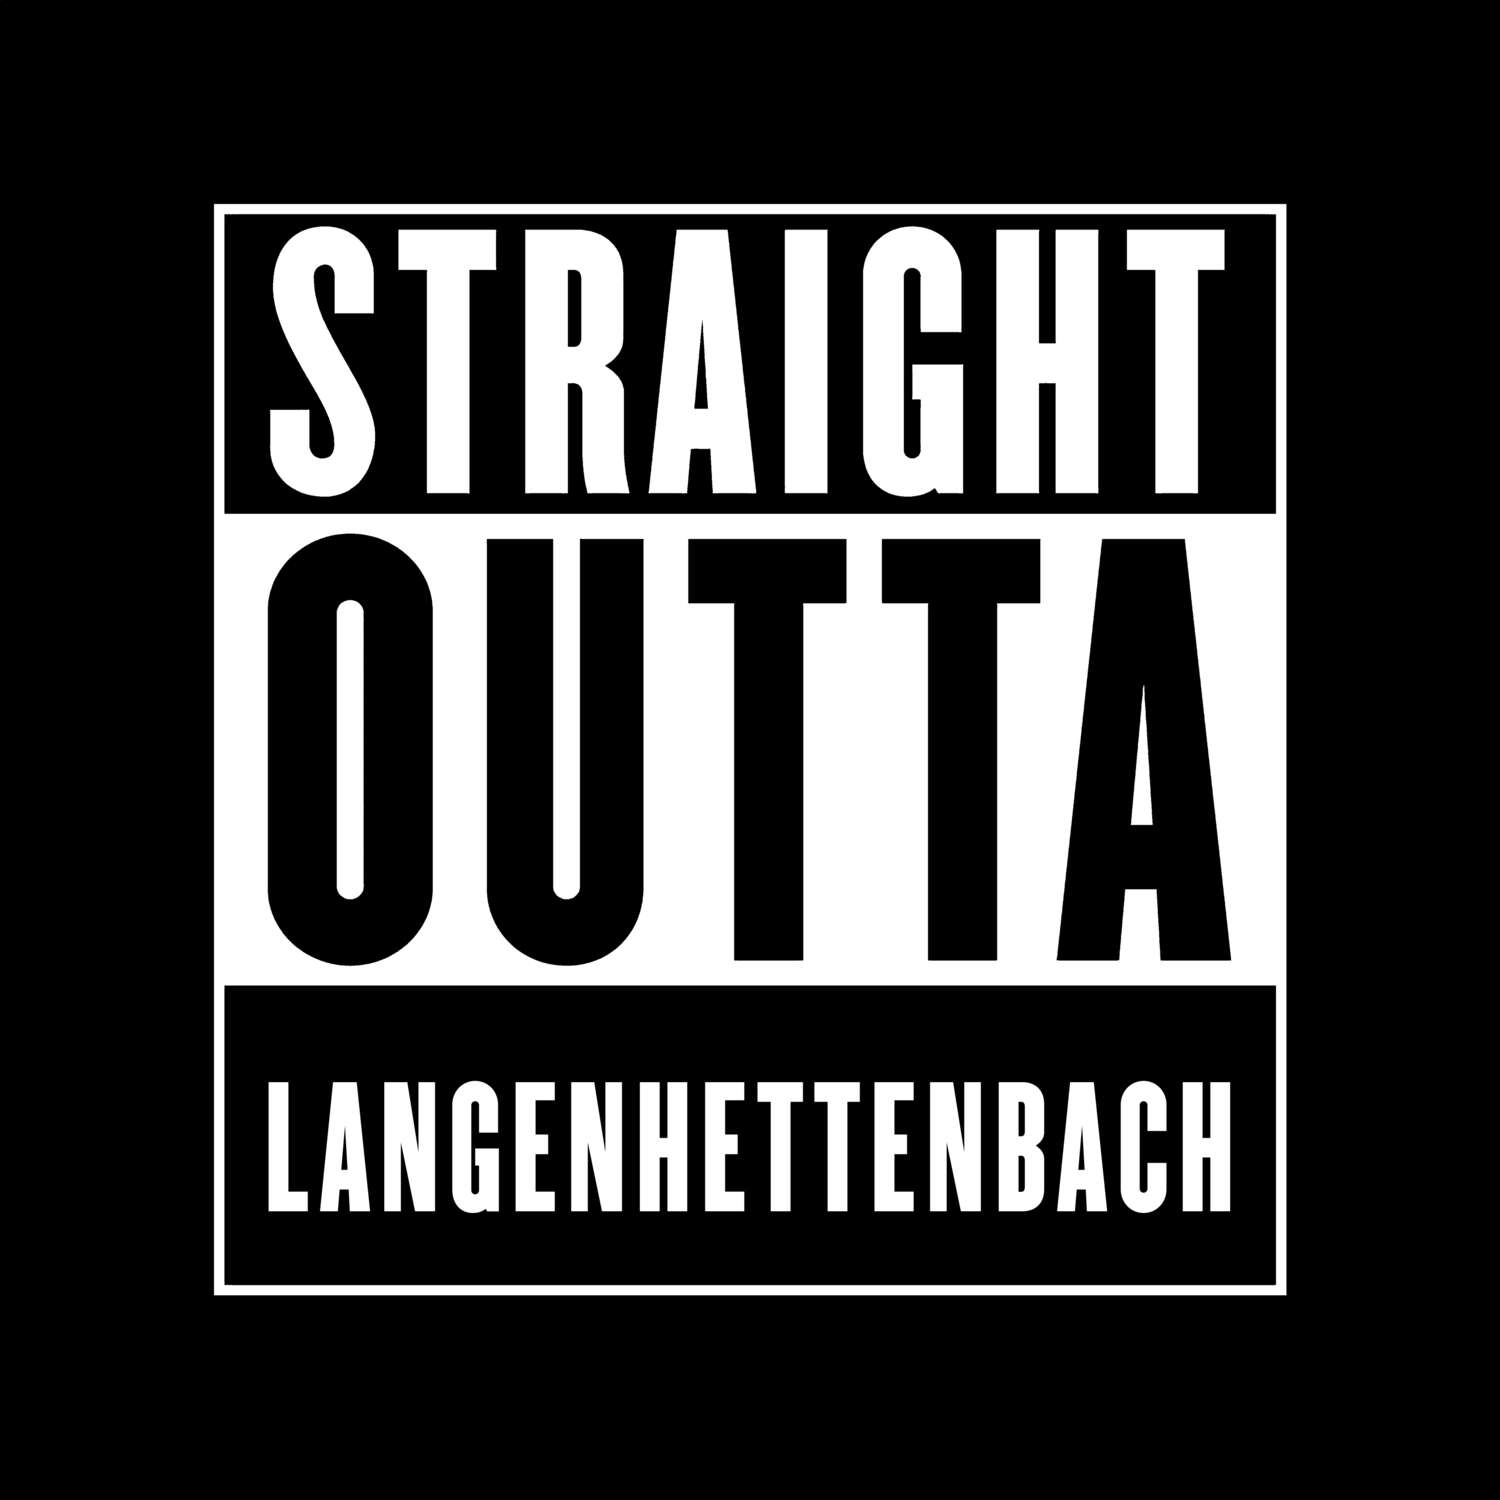 Langenhettenbach T-Shirt »Straight Outta«